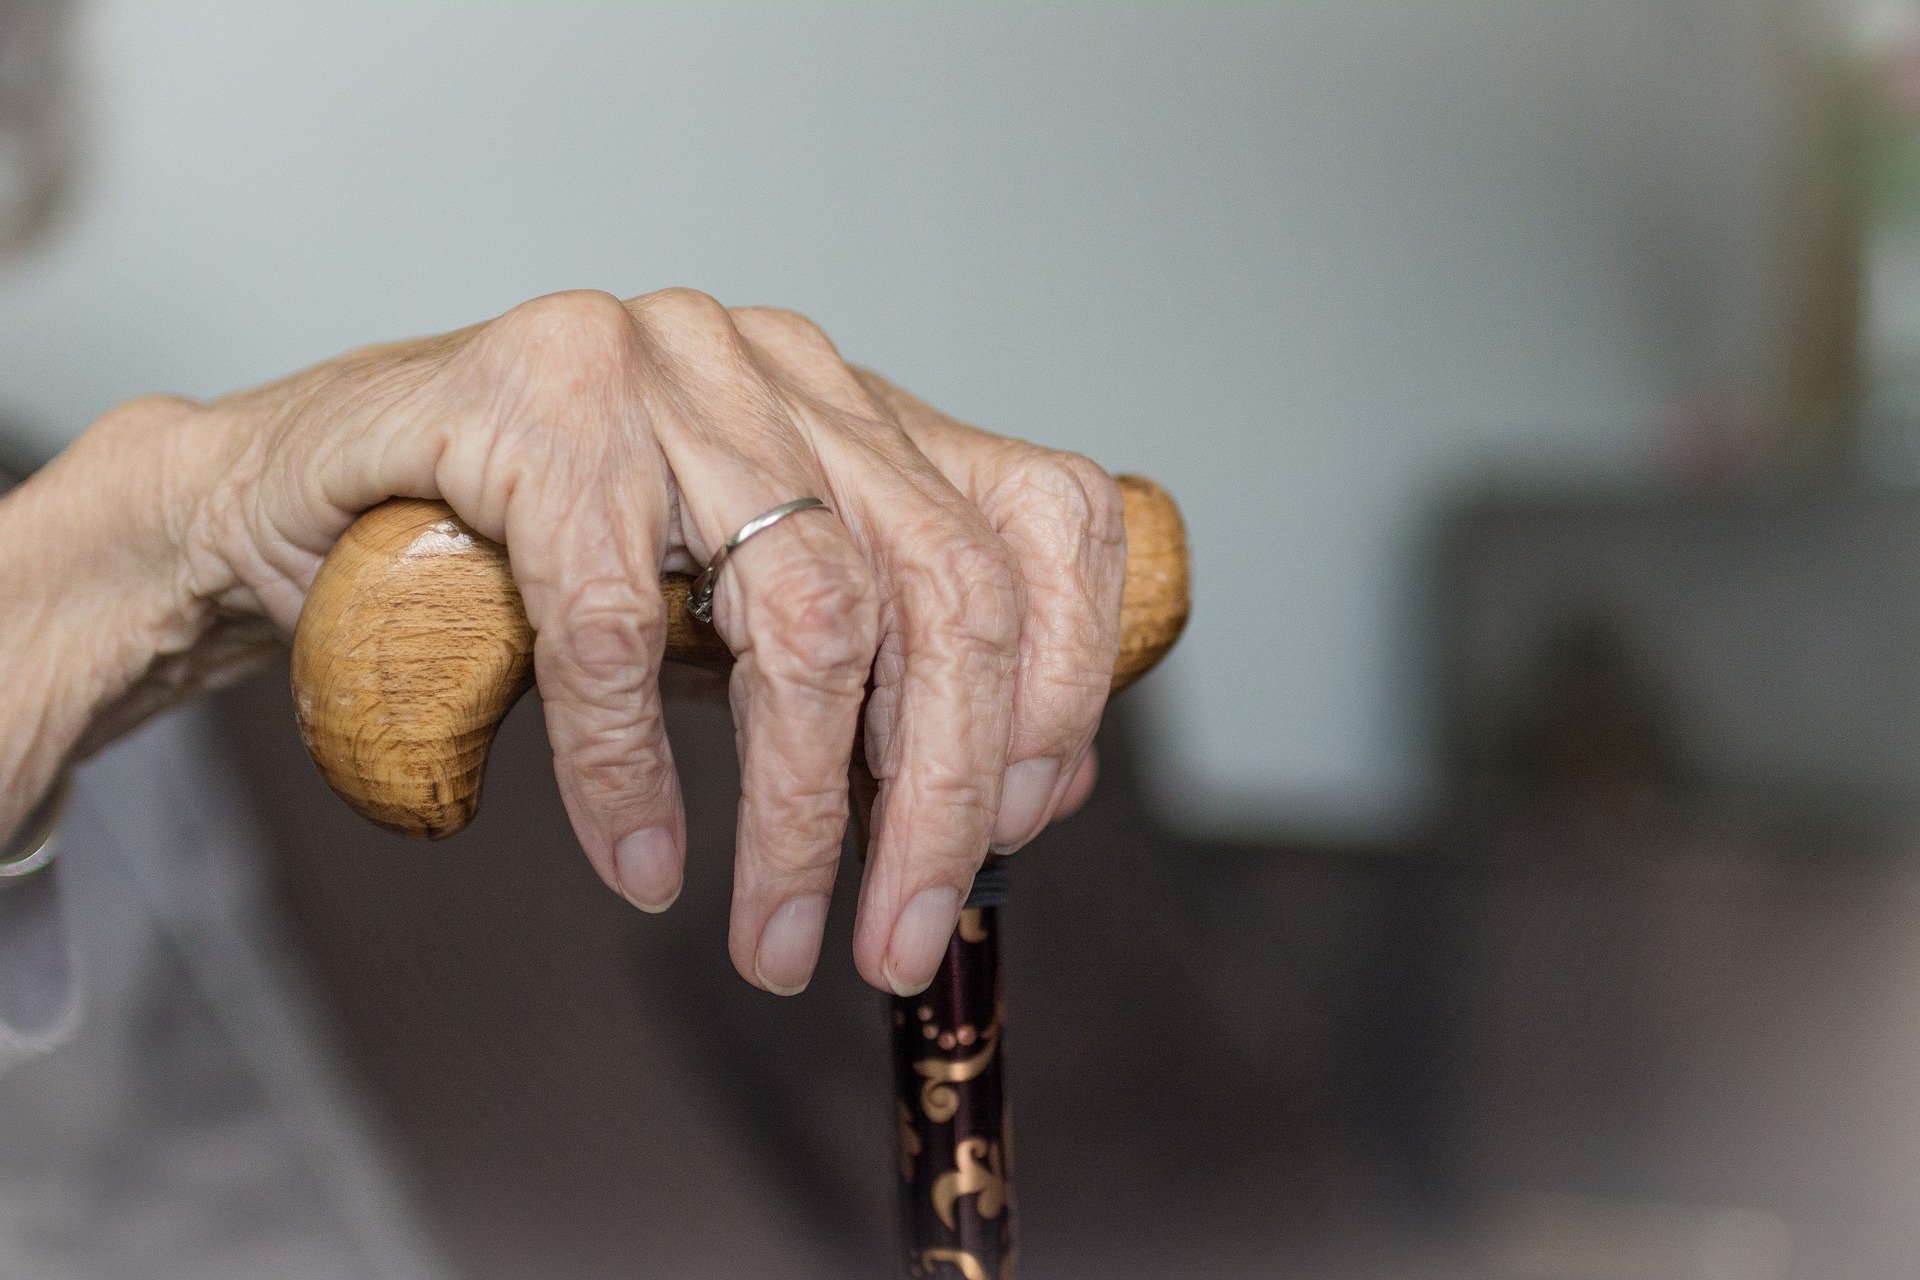 Koszty związane z chorobą Alzheimera wynoszą w Polsce przeszło 11 mld zł rocznie